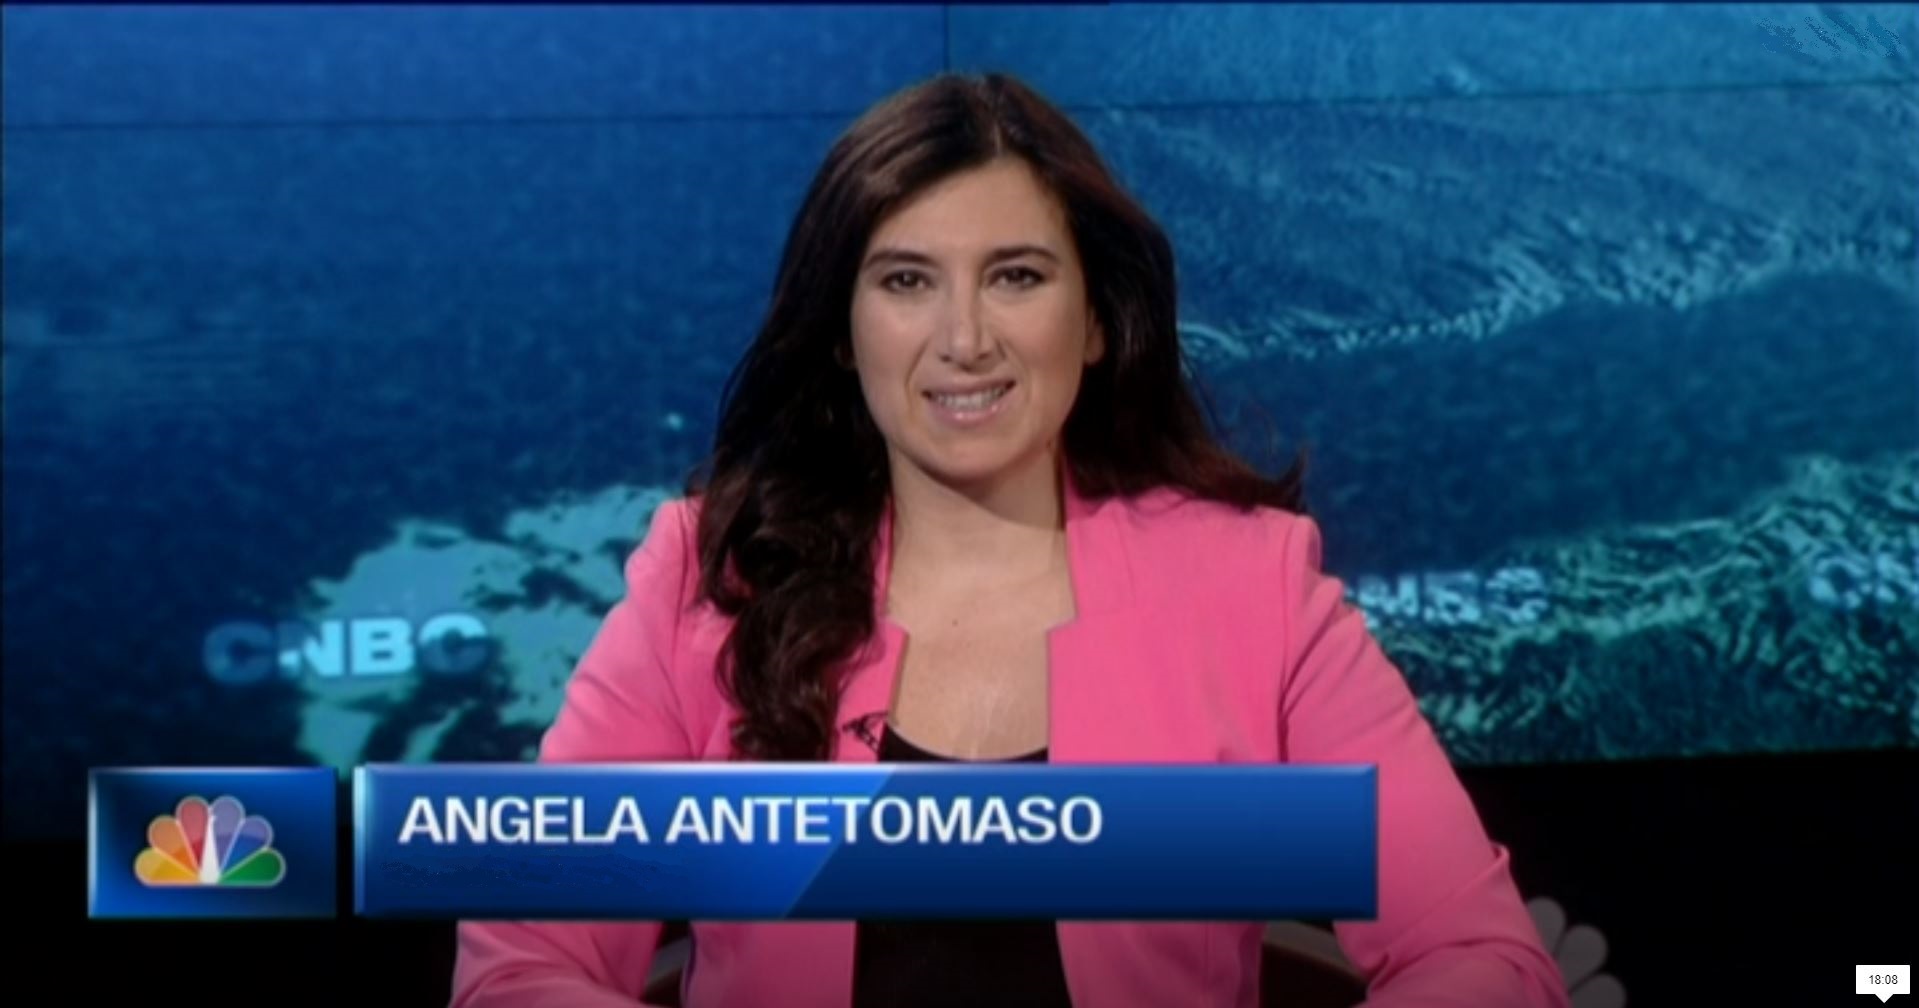 Angela Antetomaso